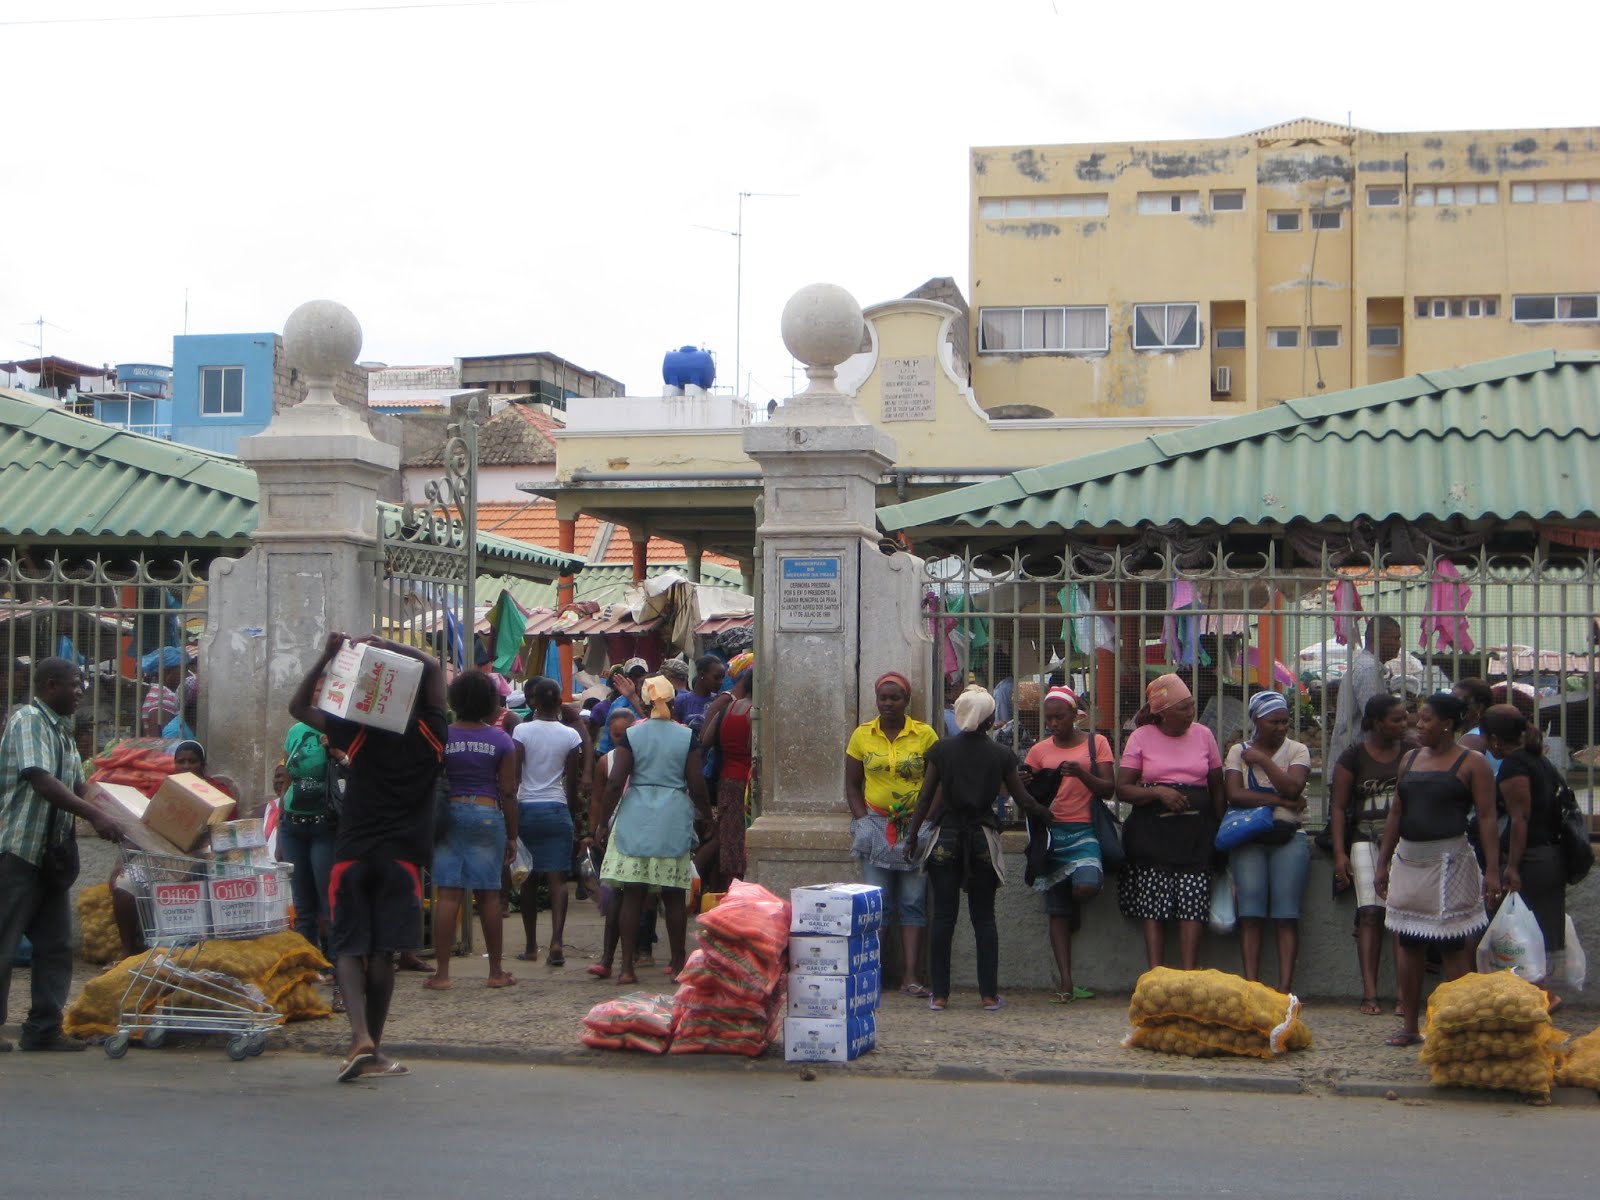 The Market in Praia, Cape Verde